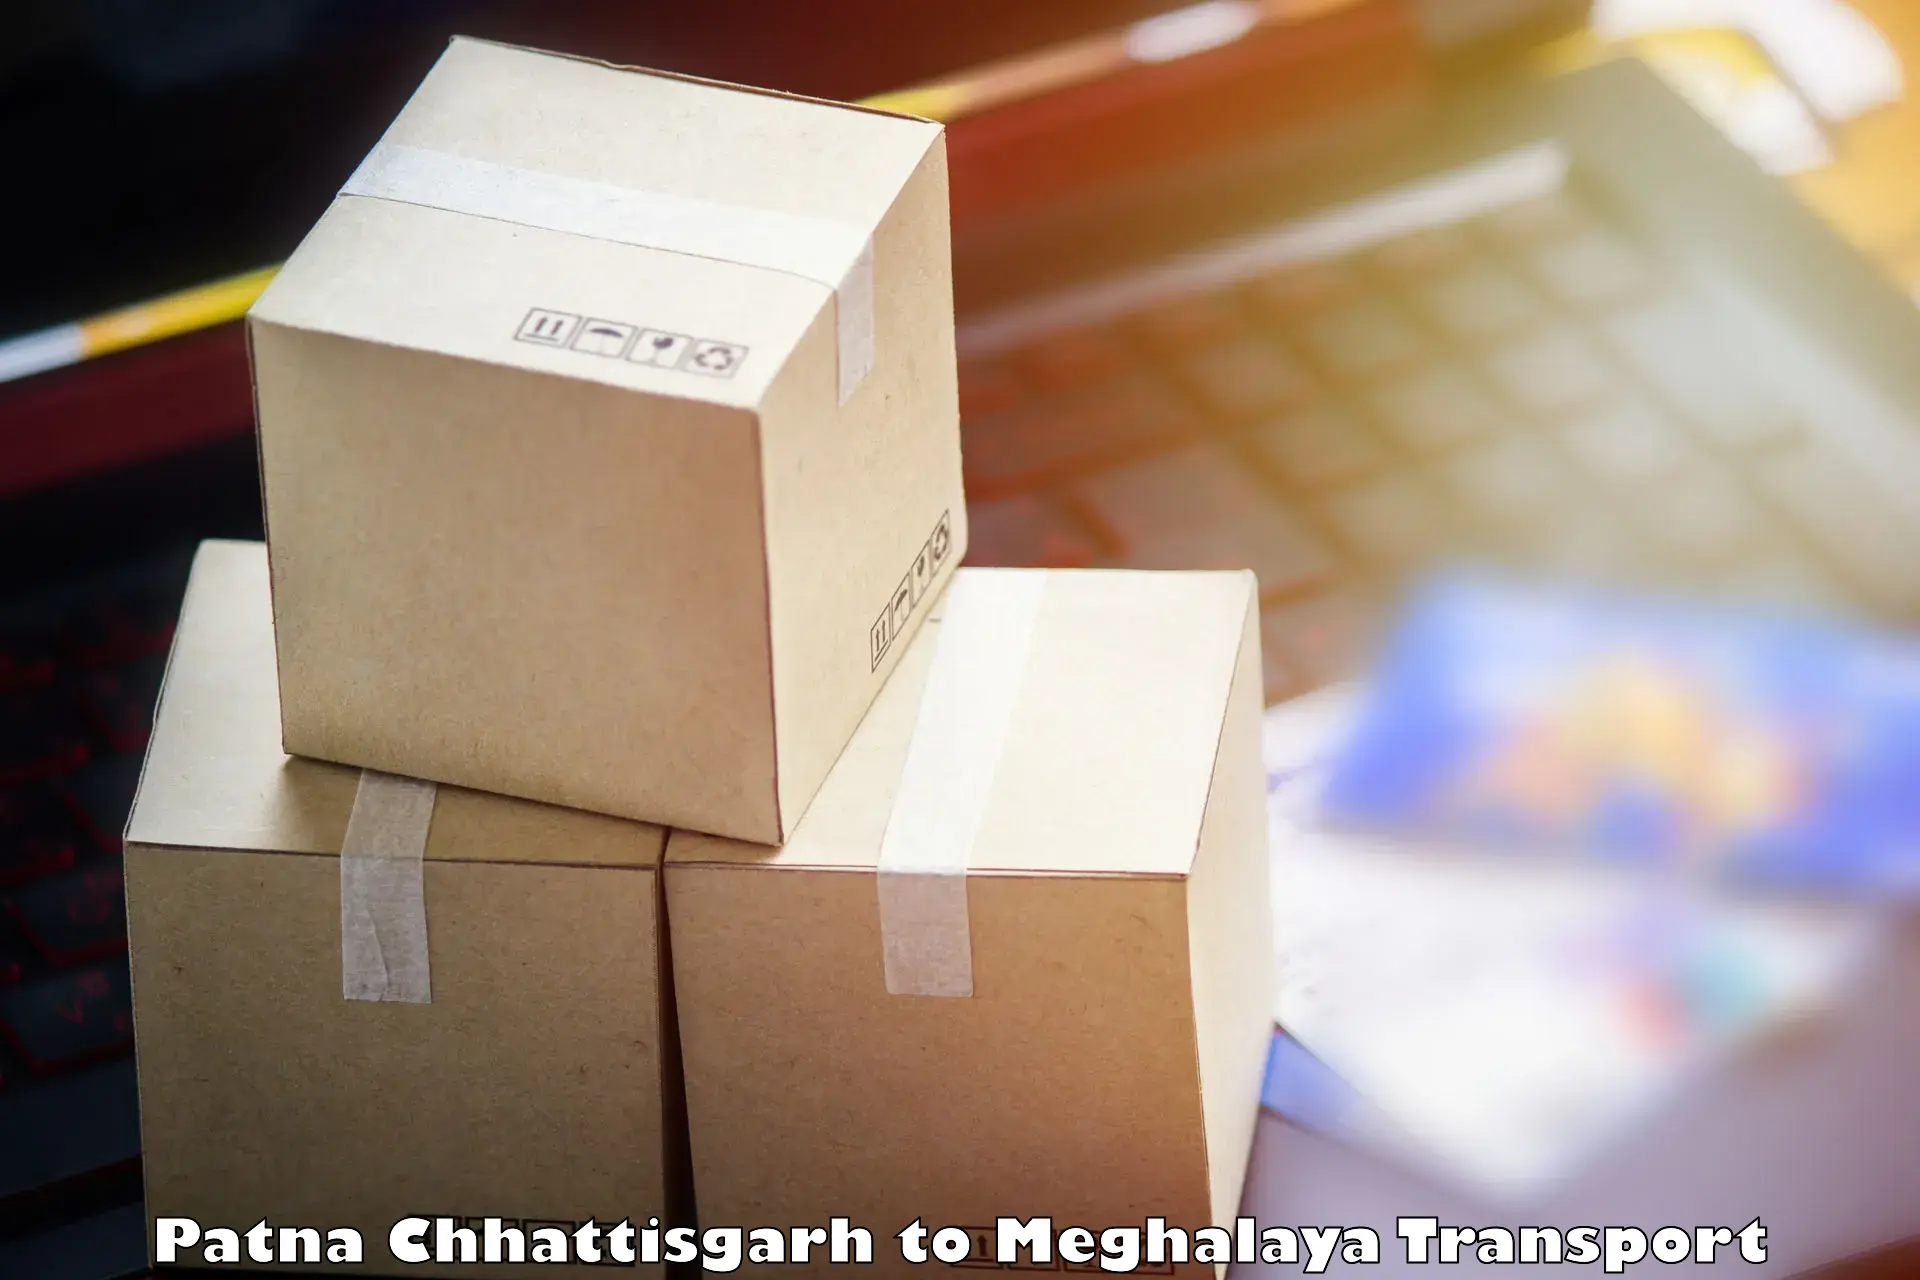 Delivery service Patna Chhattisgarh to Tikrikilla